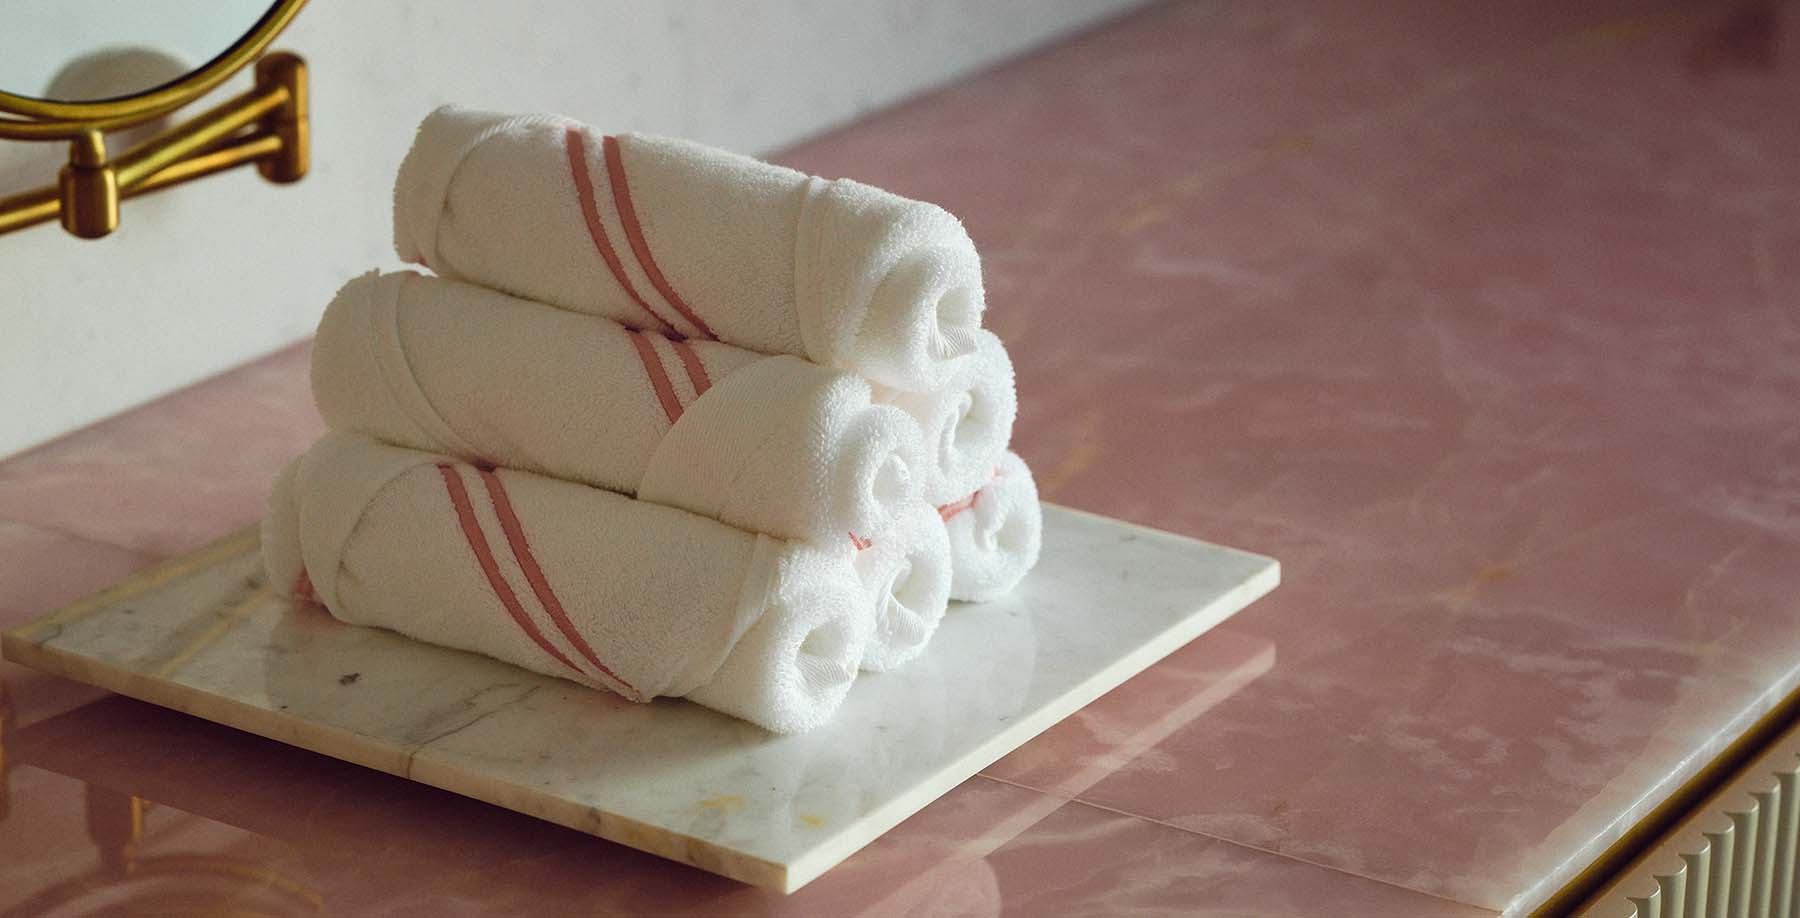 beckett-interiors-bathroom-towels